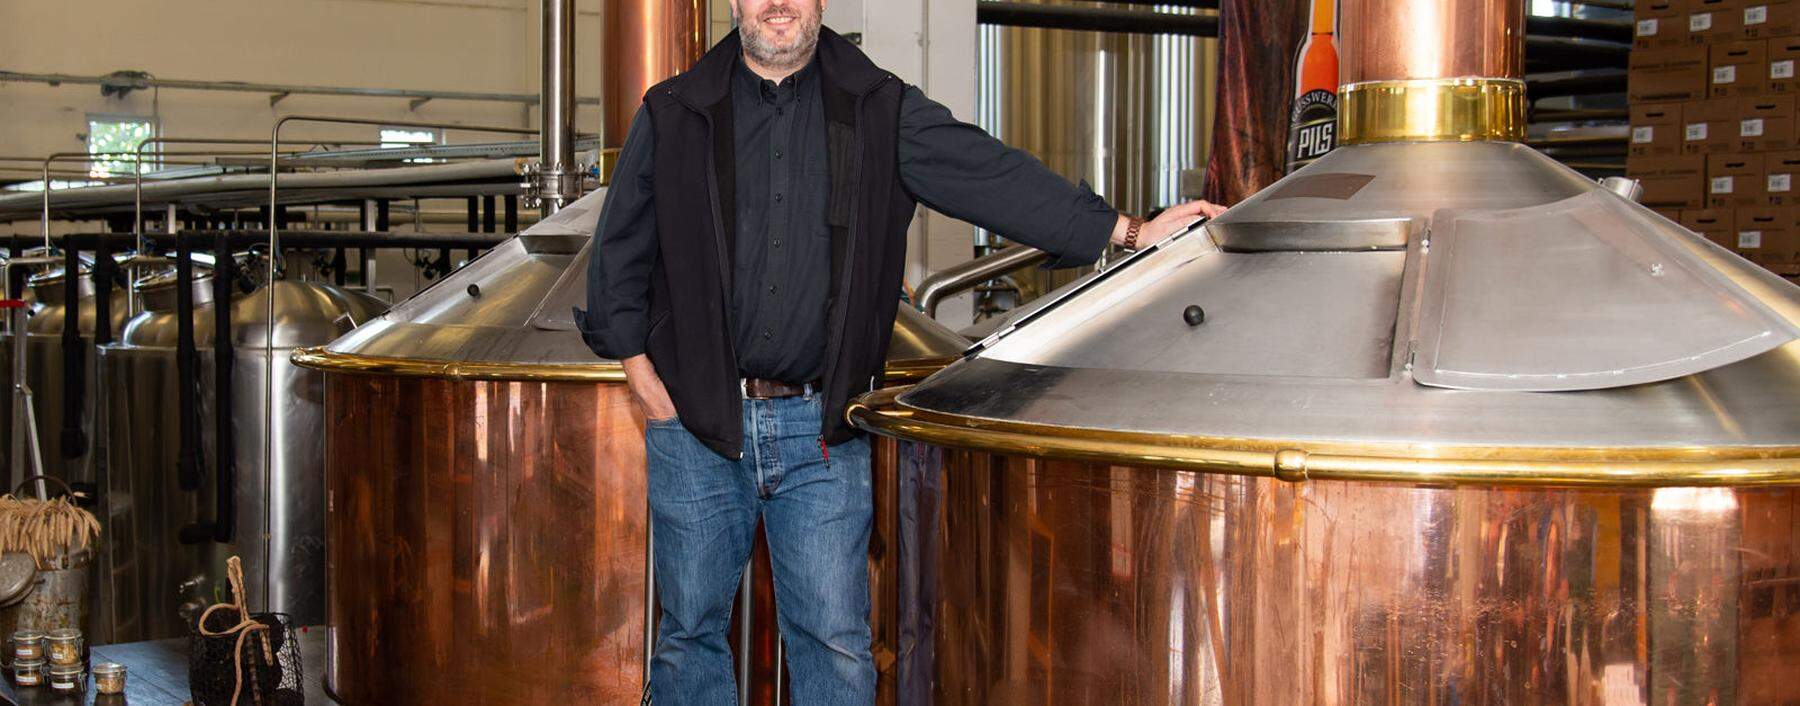 Braumeister Reinhold Barta erhitzt sein Bier u. a. mit Steinen vom Kapuzinerberg.